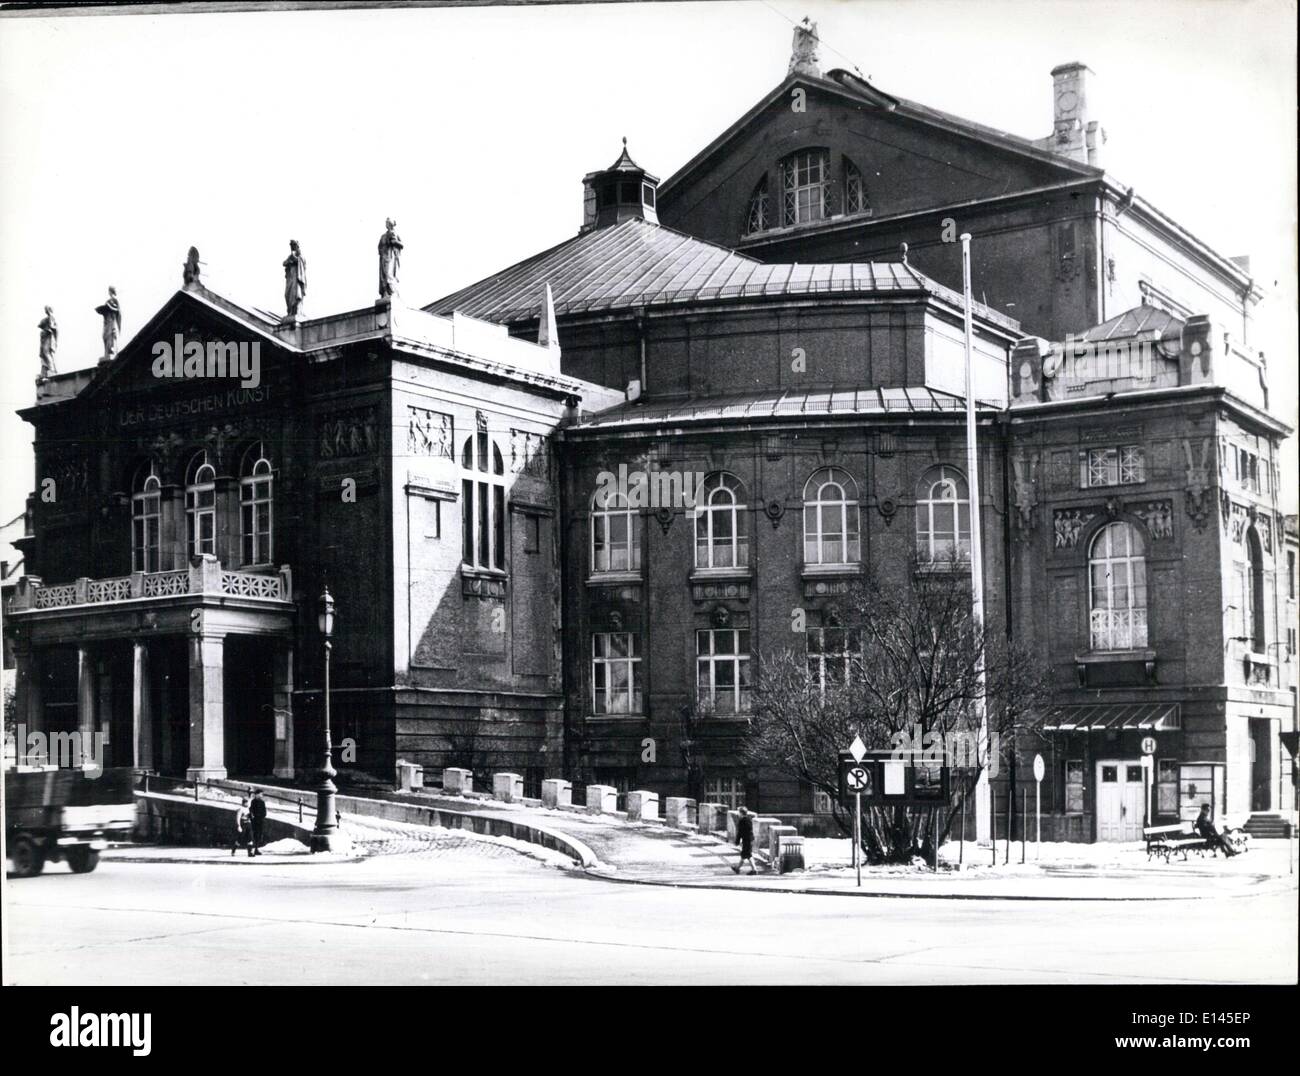 Avril 04, 2012 - Le théâtre Prinzregenten-logement, l'opéra, depuis le théâtre national a été détruit pendant la guerre. Ici chaque été à la fois de l'Opéra de Munich ''festivals'' voitures de l'opéra avec des amis du monde entier sont à voir. Banque D'Images